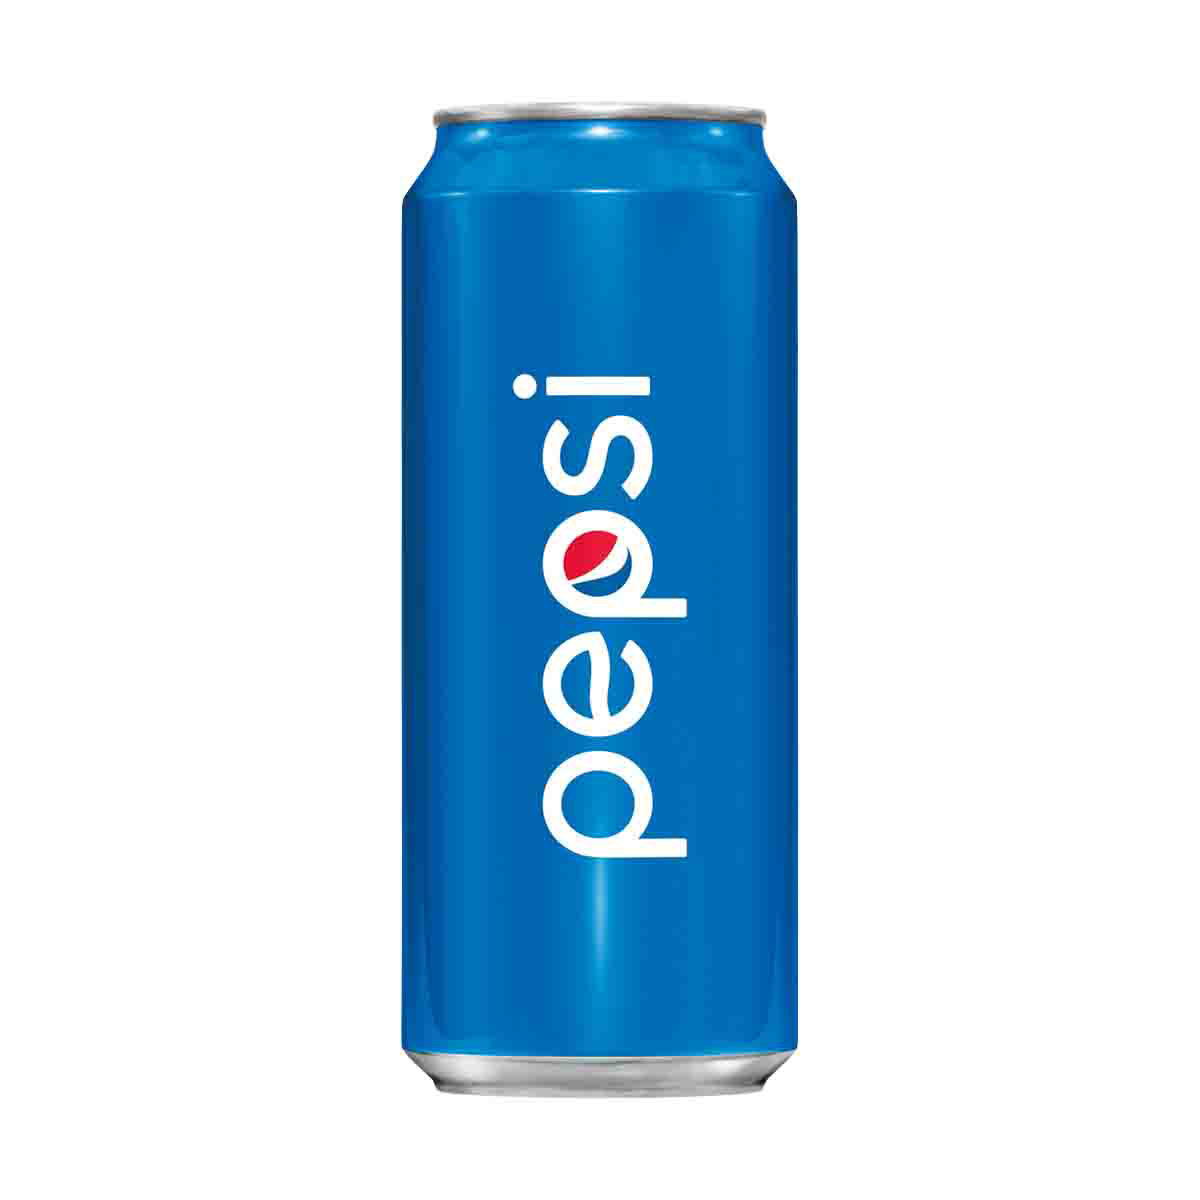 Pepsi Cola Soda, 16 oz. Can